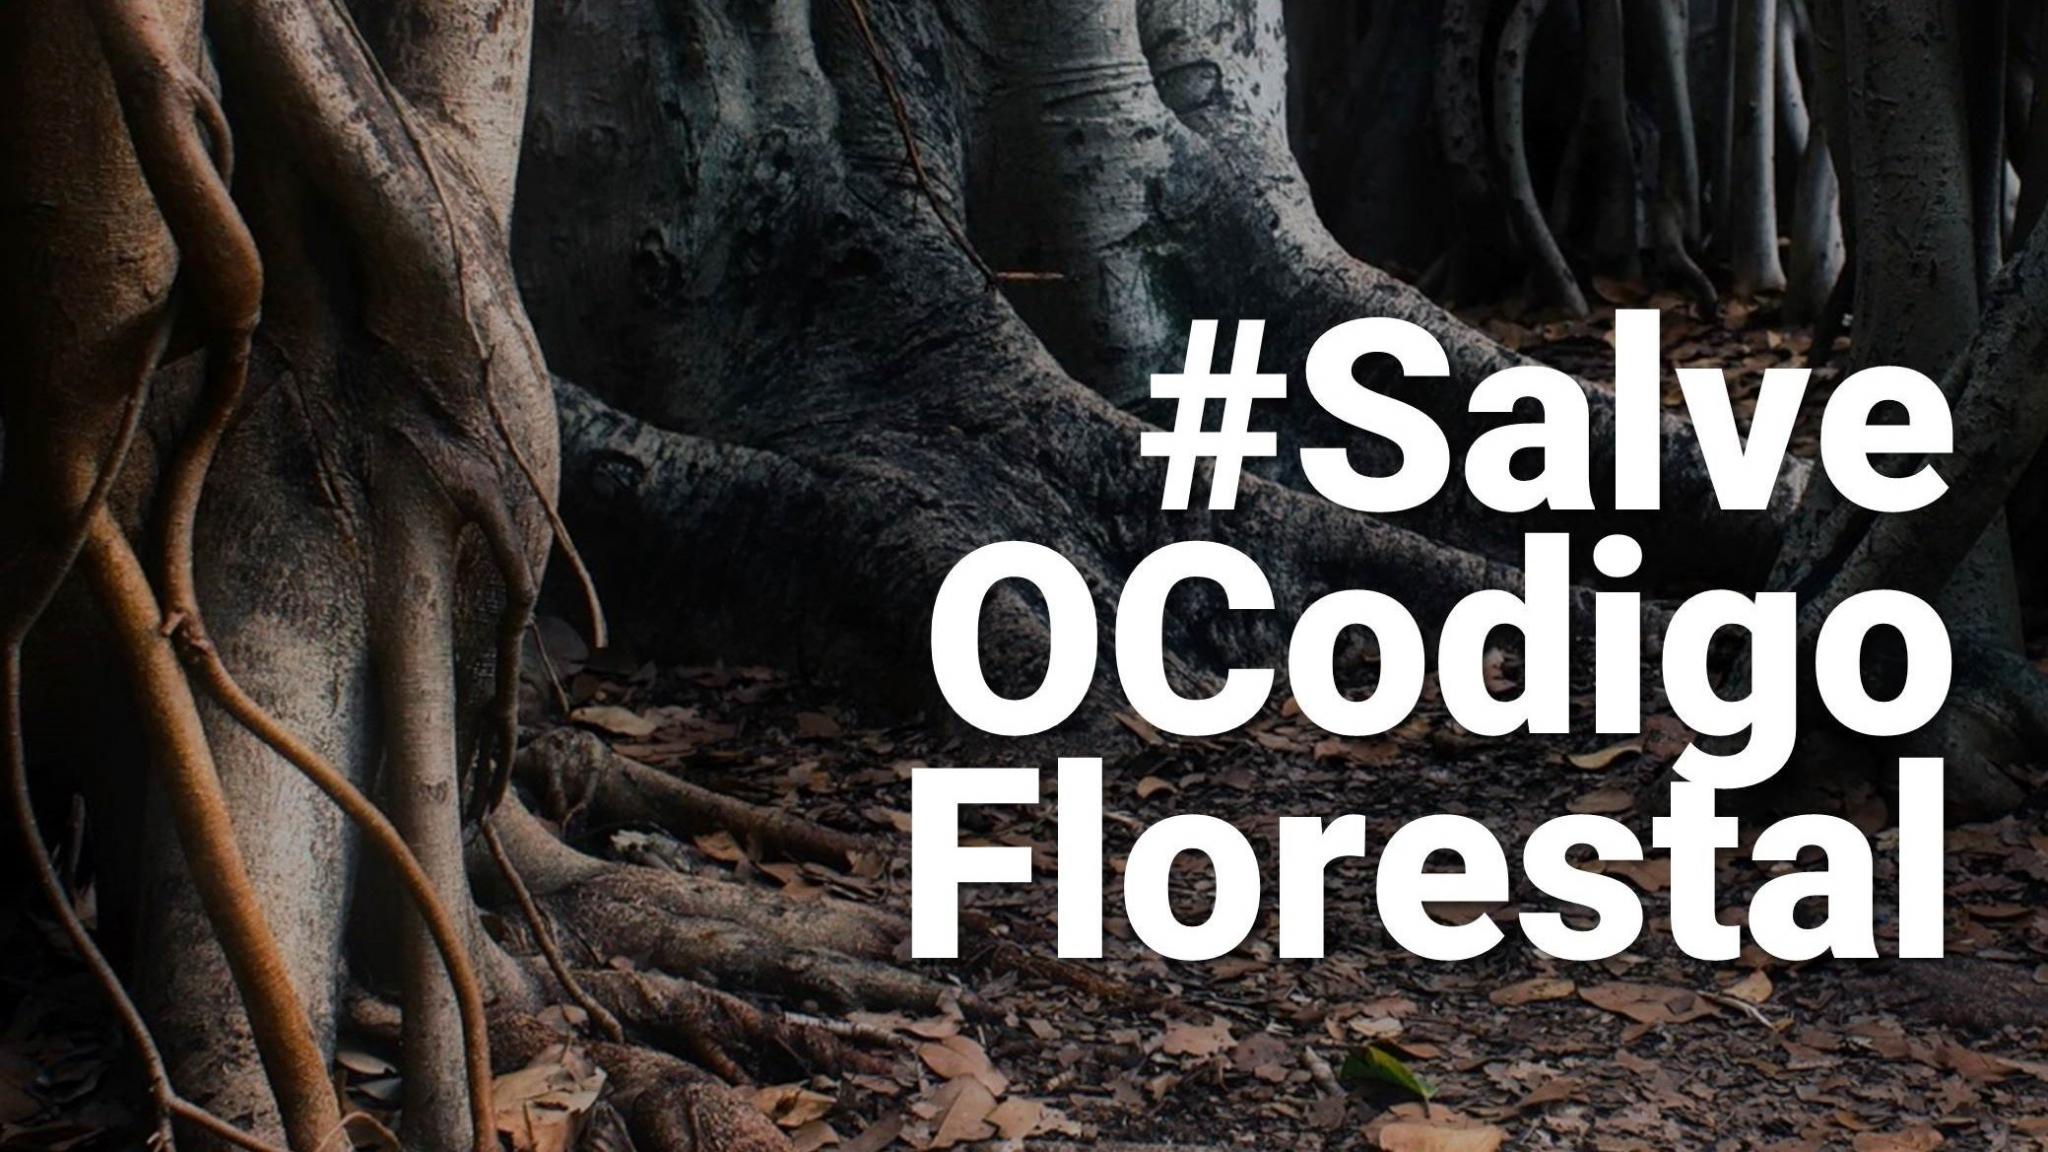 Código Florestal